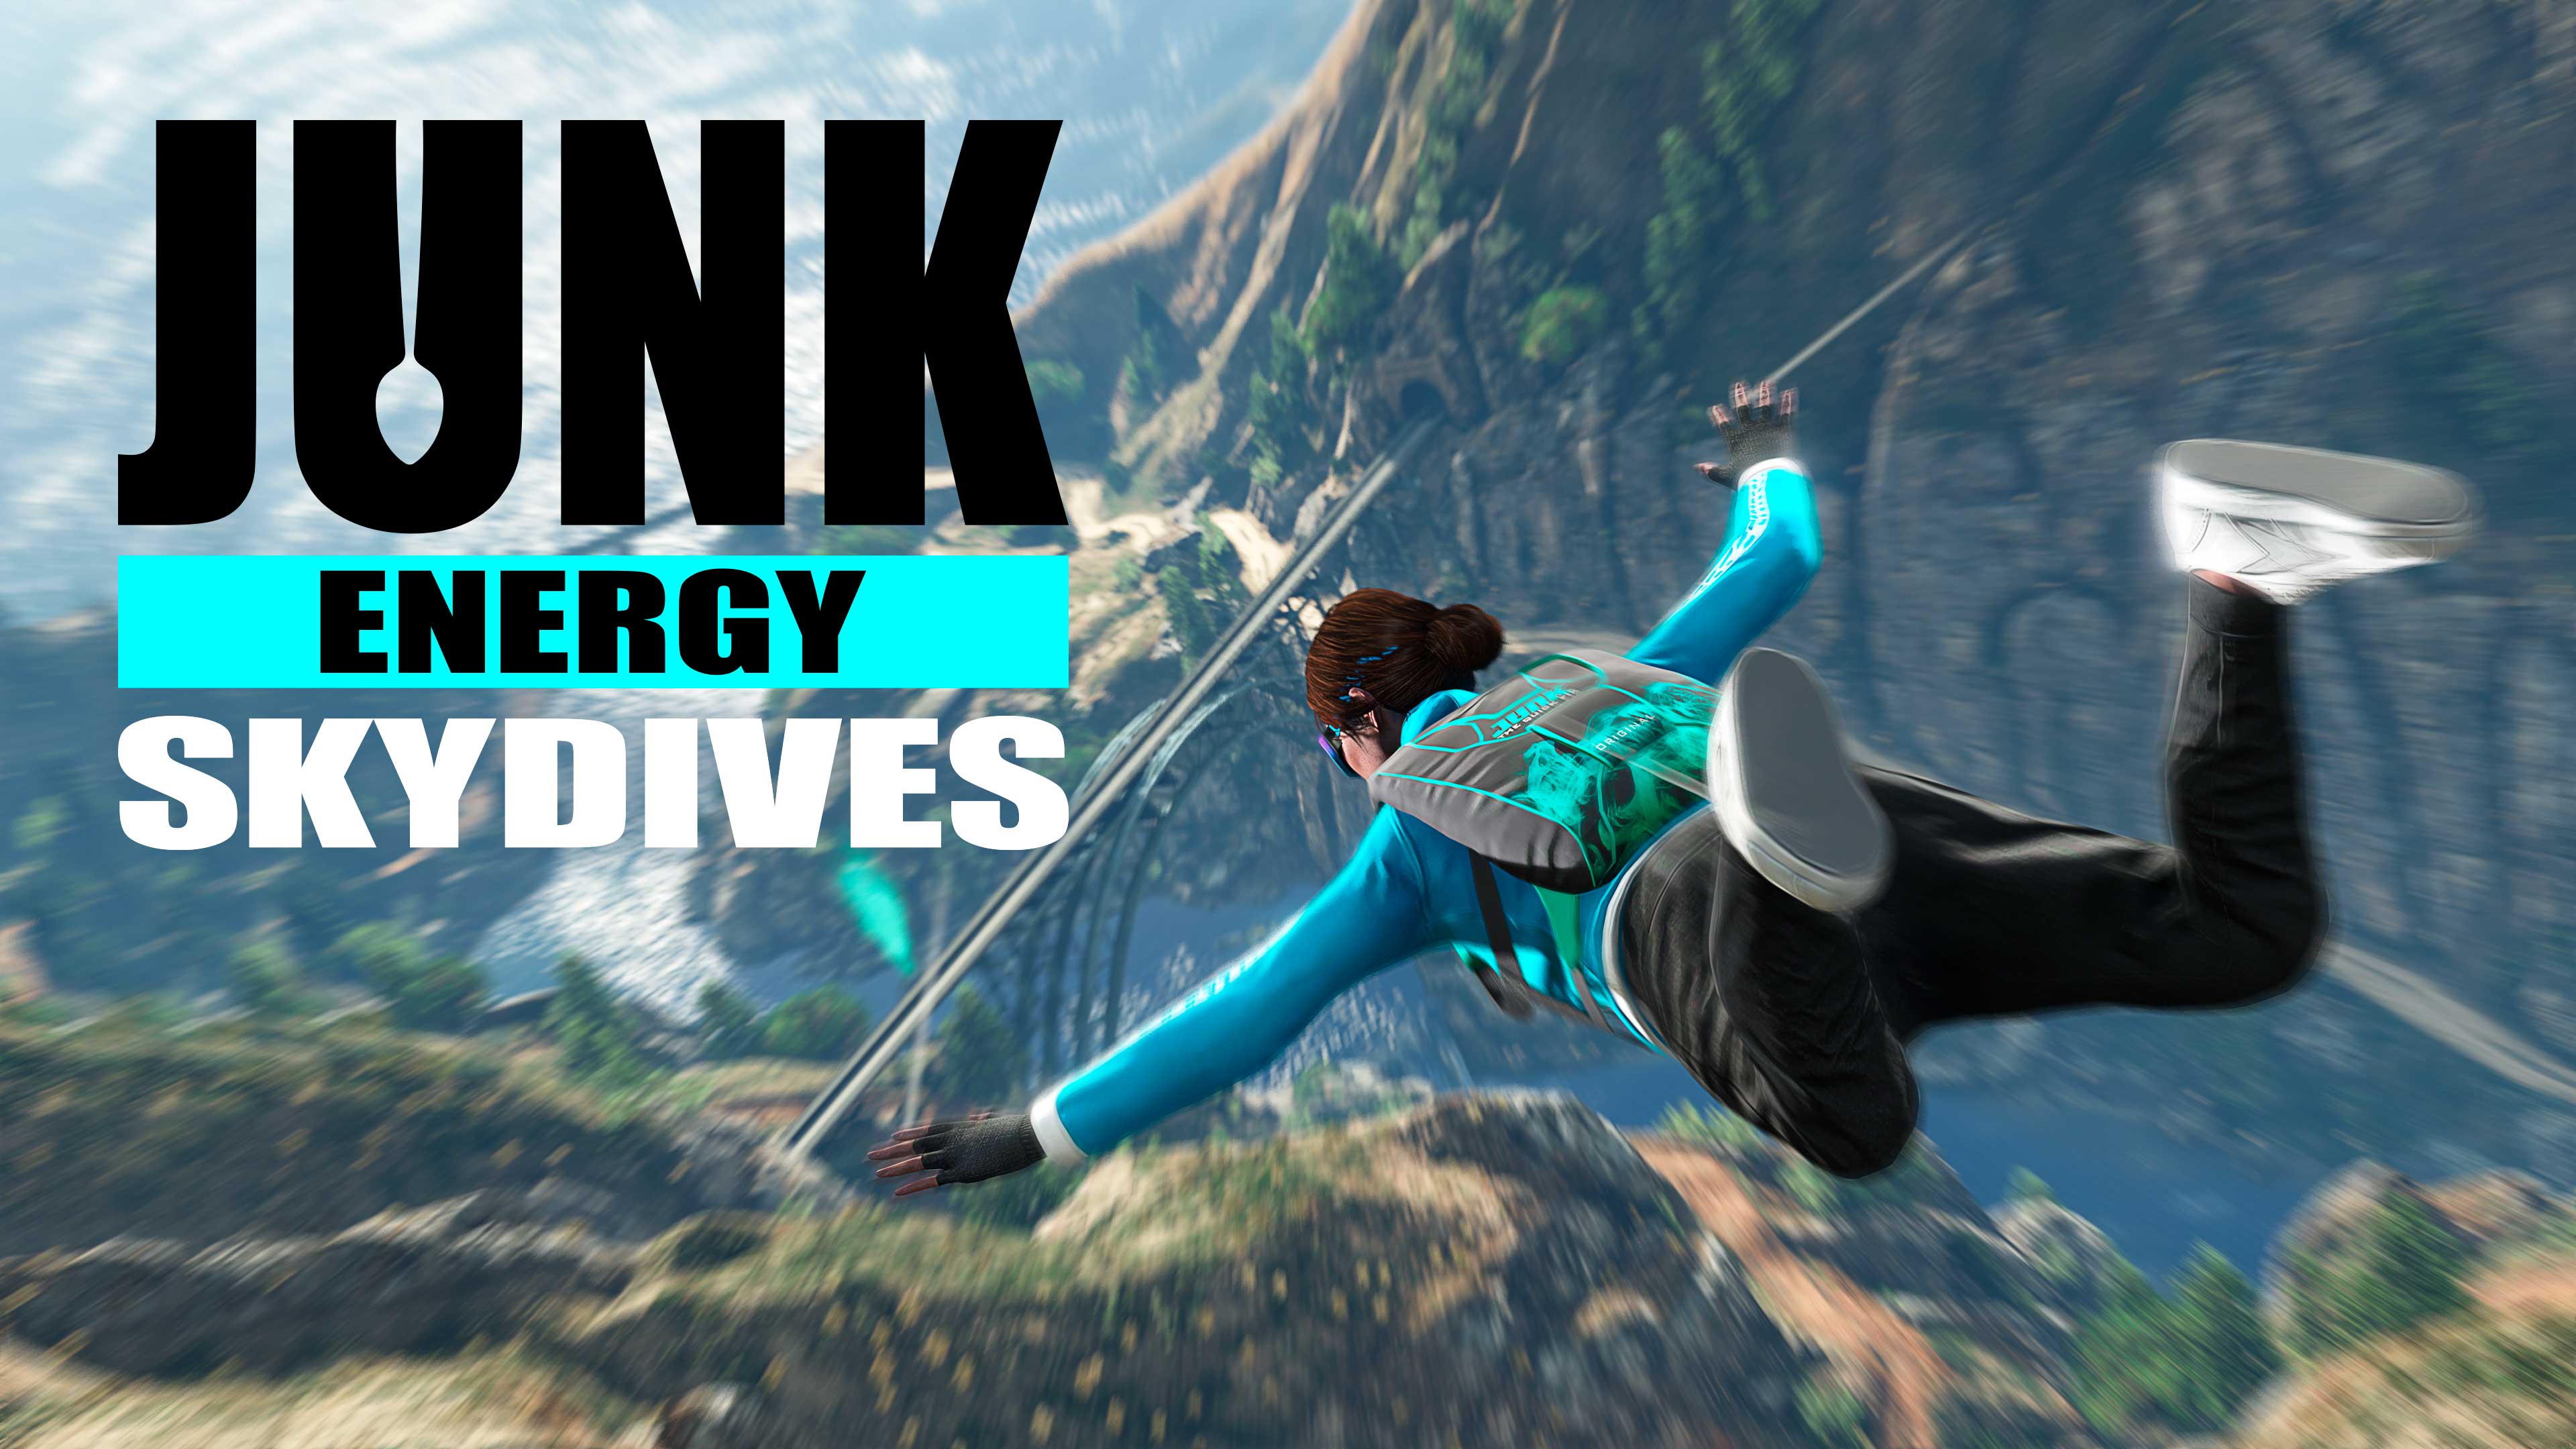 Pôster do evento Pulos Junk Energy com um personagem do GTA Online saltando de paraquedas sobre uma montanha e uma ponte enquanto usa uma mochila com a marca Junk Energy.